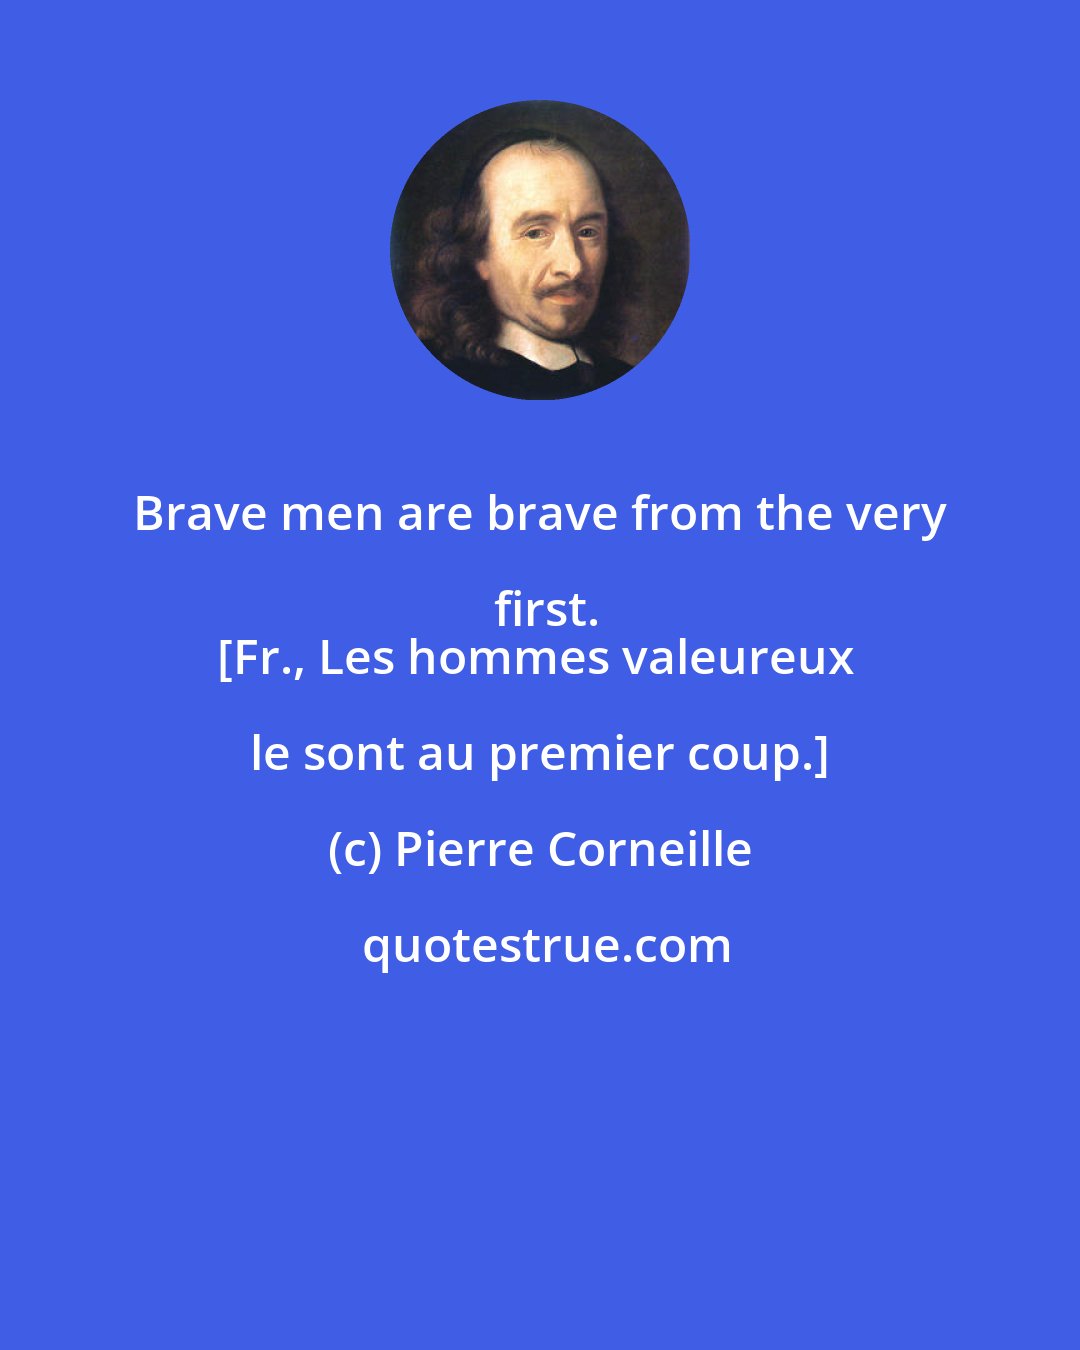 Pierre Corneille: Brave men are brave from the very first.
[Fr., Les hommes valeureux le sont au premier coup.]